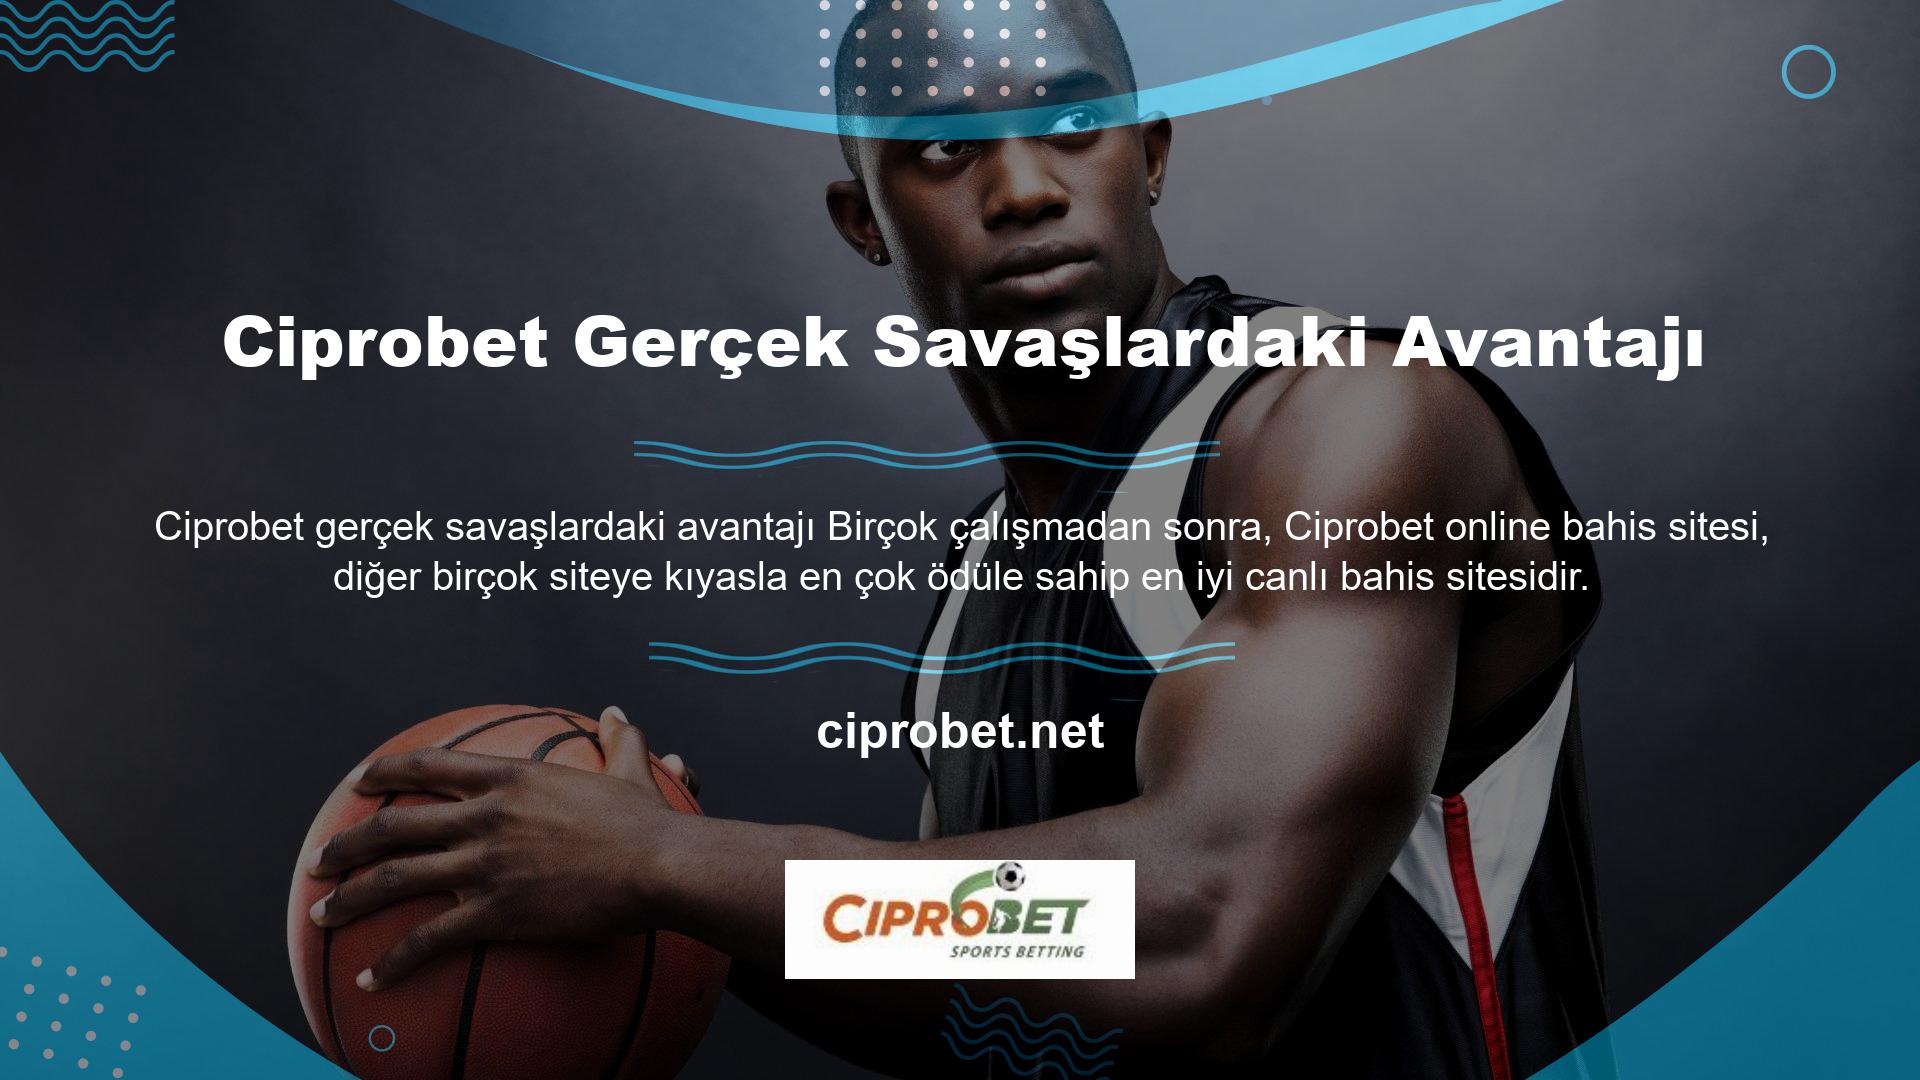 Ciprobet online bahis sitesi canlı oyunlar bölümünde ve diğer alanlarda yüksek oranlar sunmaktadır